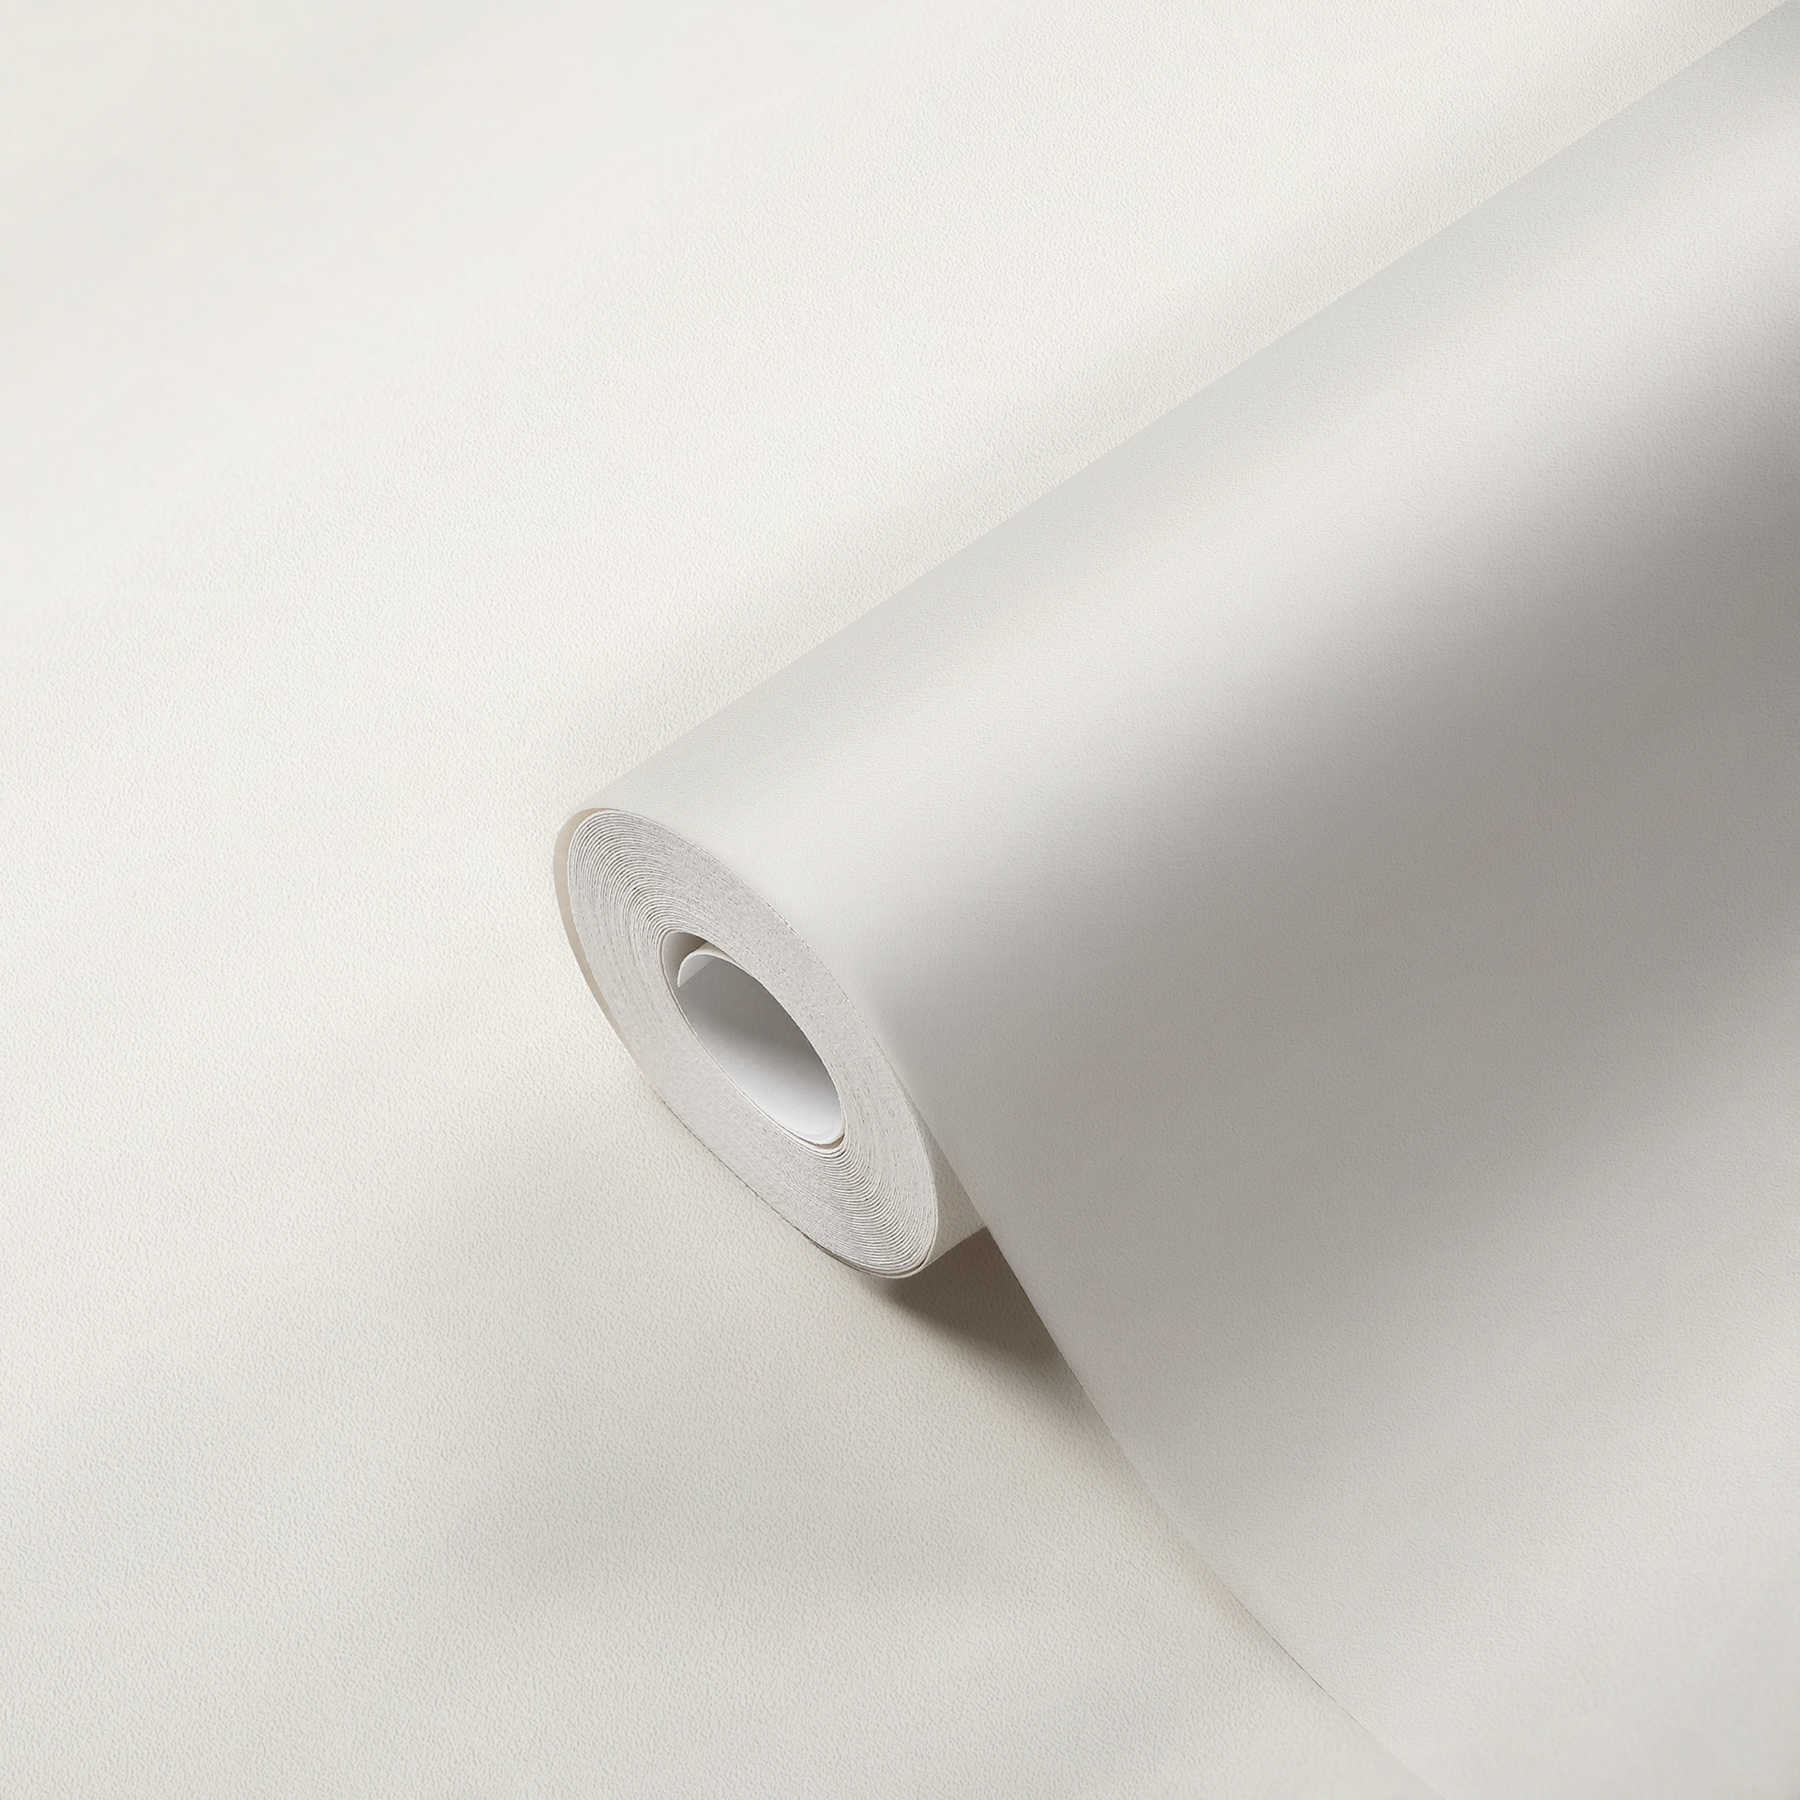             Papel pintado no tejido blanco, rollo grande de doble ancho 21m
        